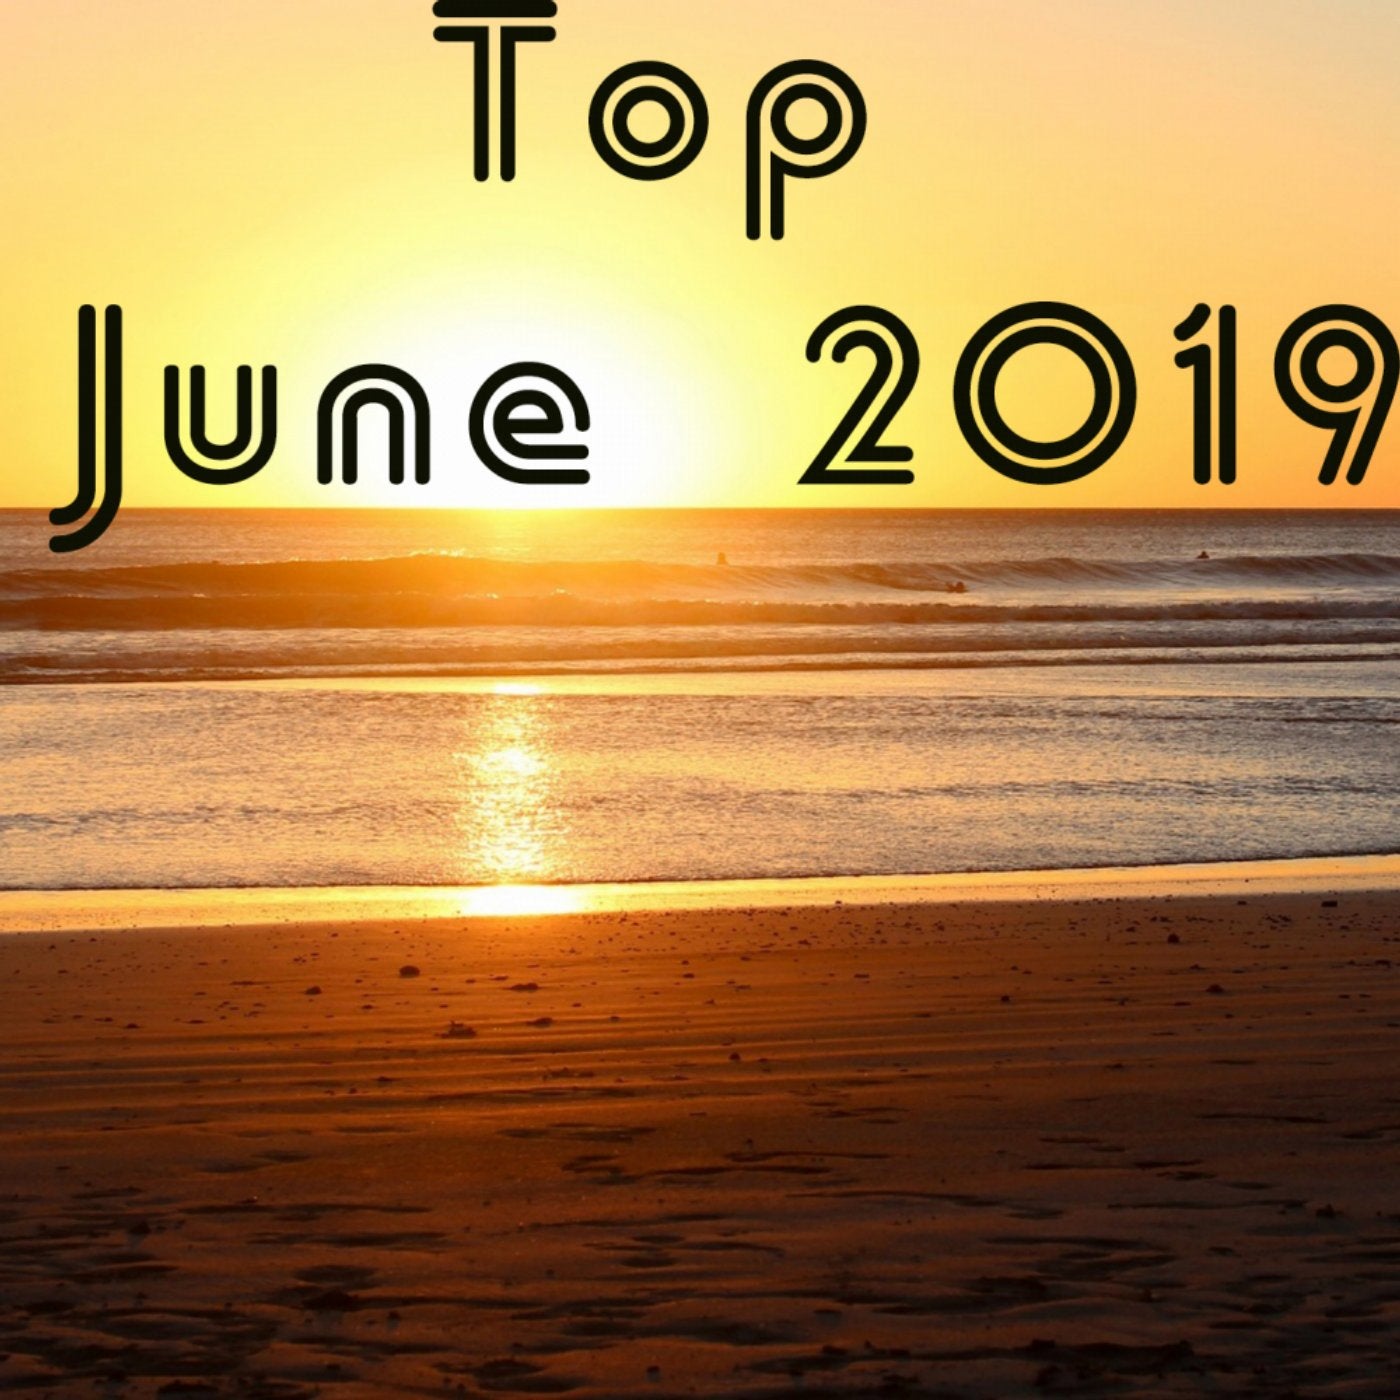 Top June 2019